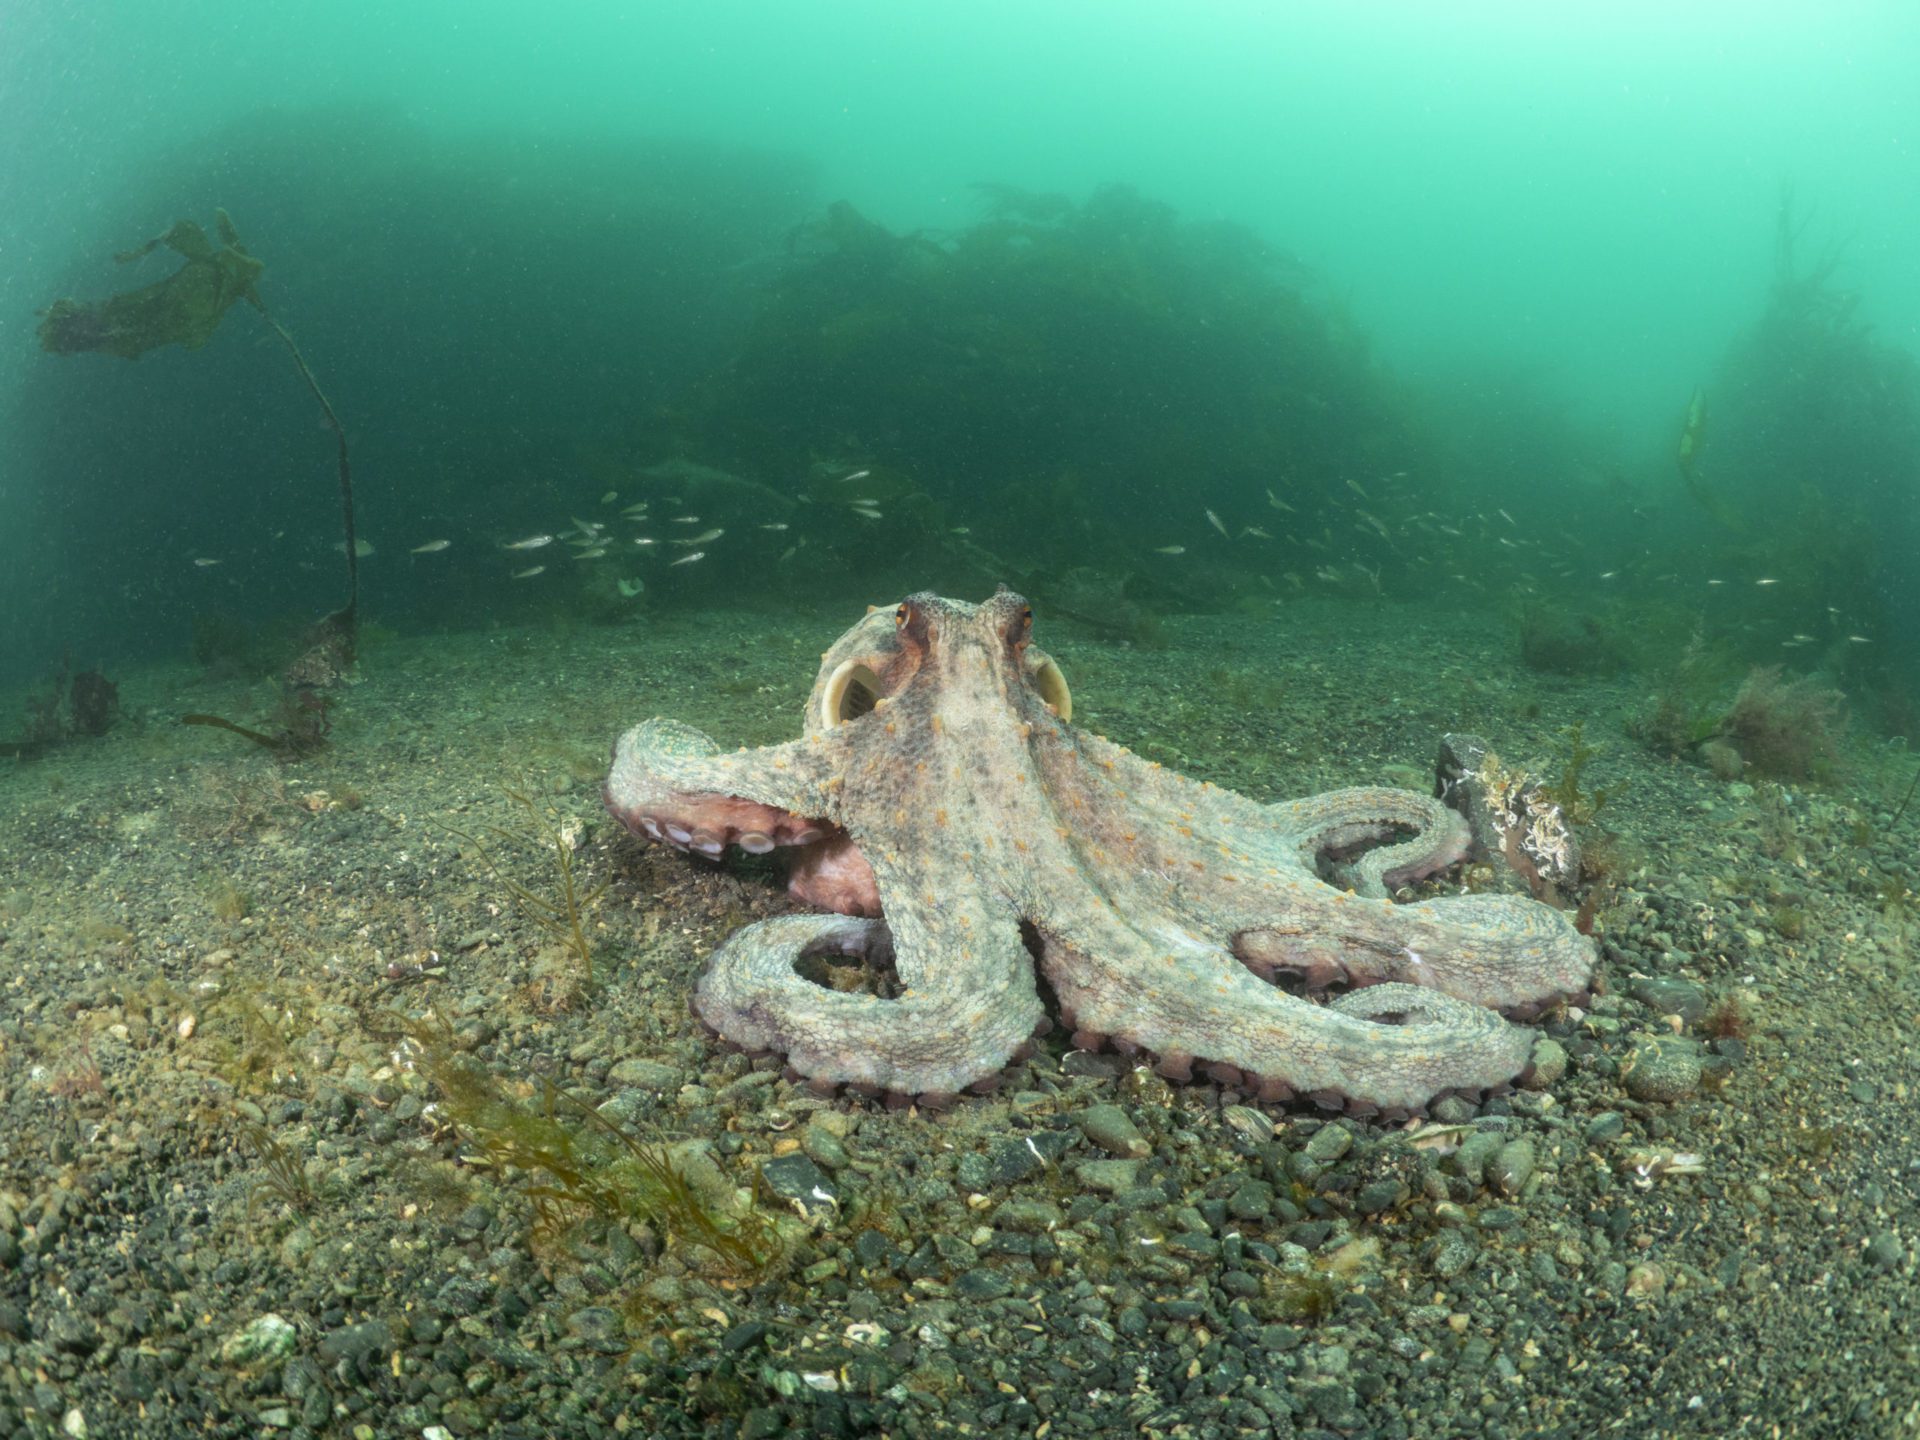 Common Octopus in open water